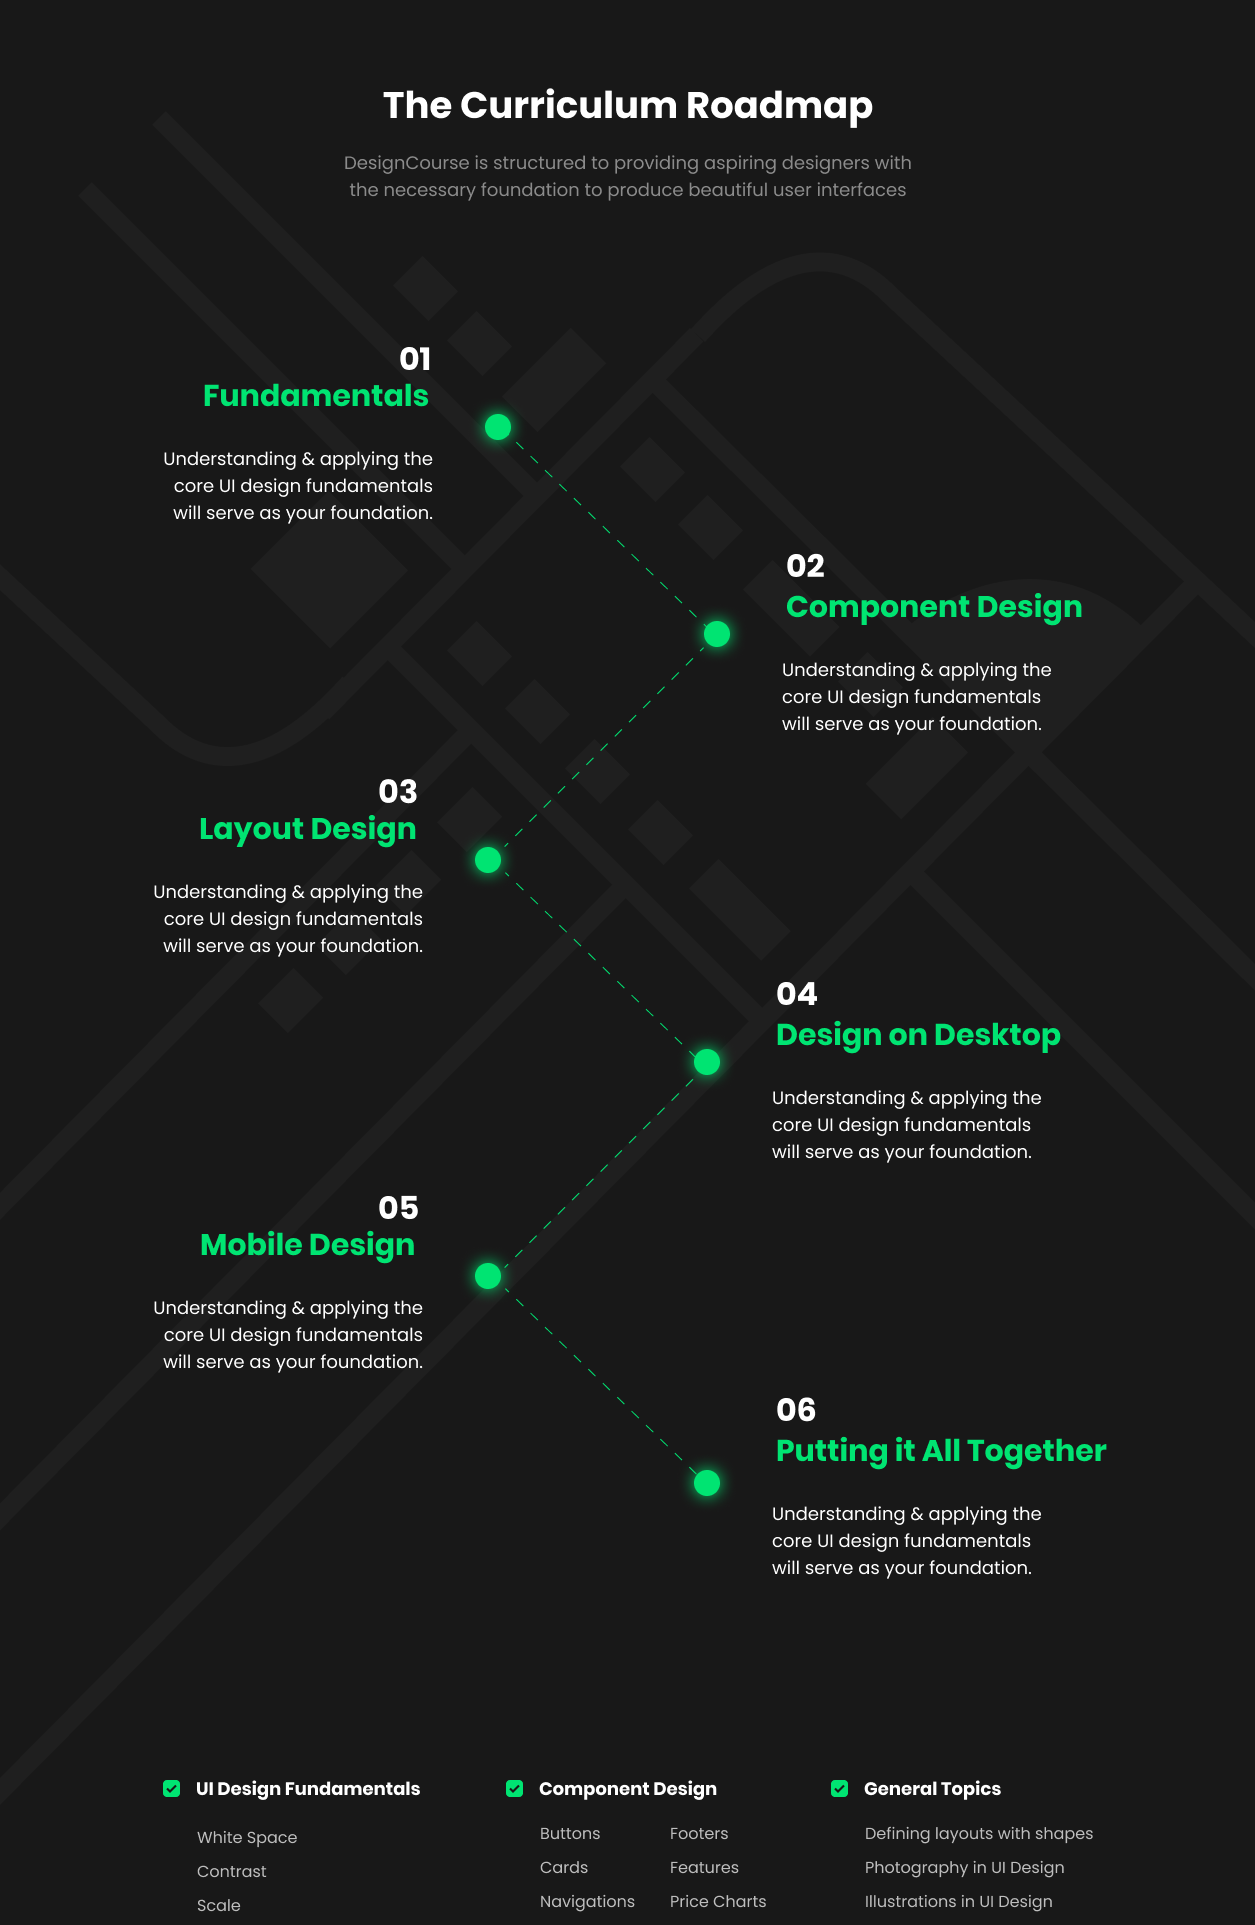 DesignCourse roadmap